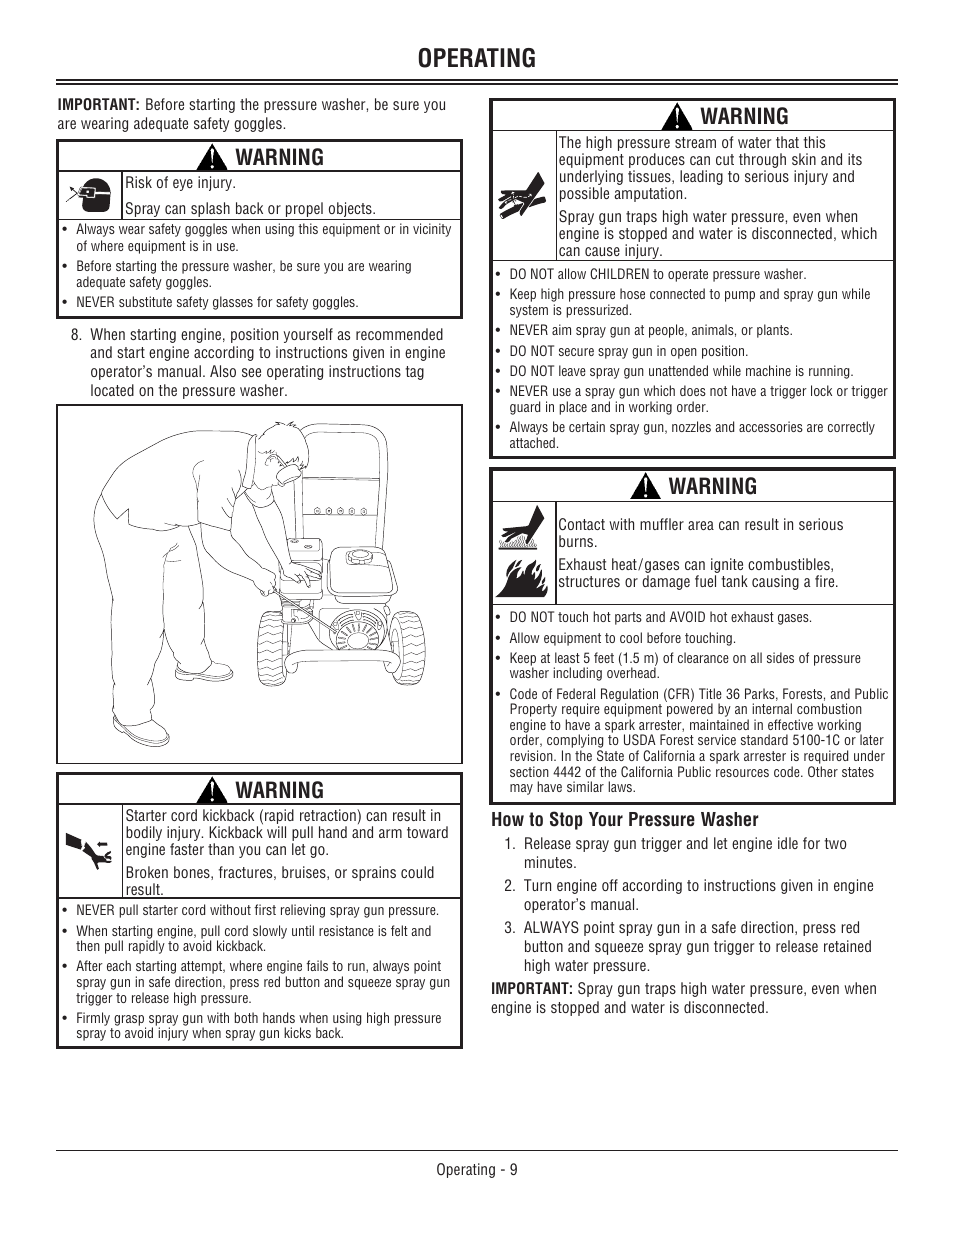 Operating, Warning | John Deere OMM156510 User Manual | Page 13 / 24